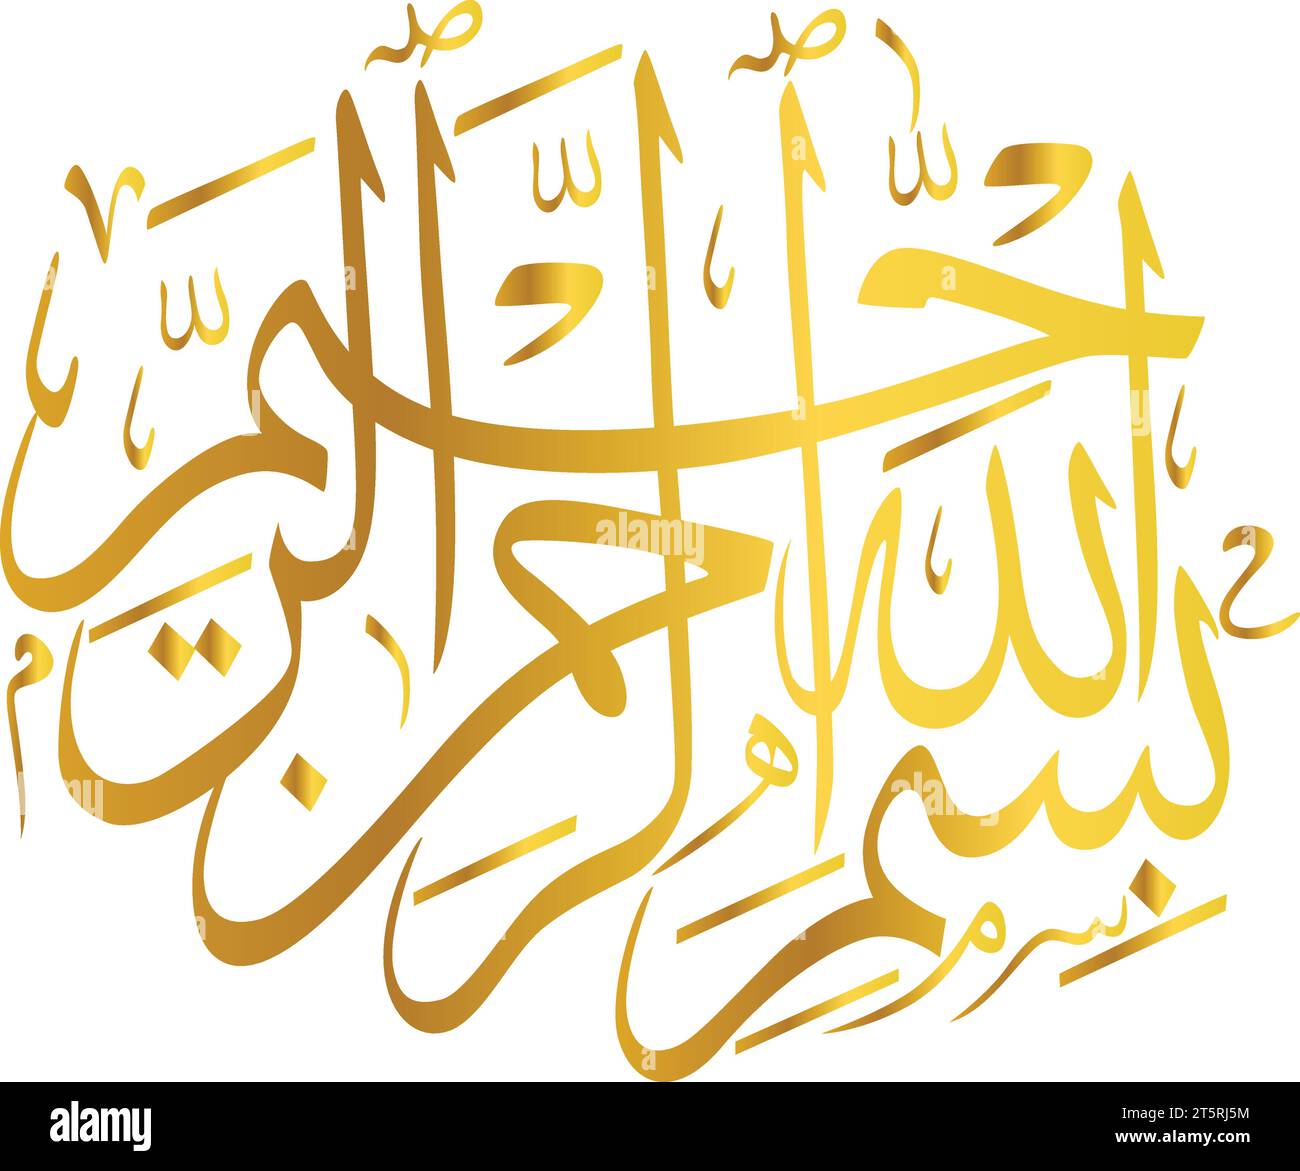 Isolé sur fond blanc, un dessin vectoriel islamique de Bismillah (au nom de Dieu) dans le style de calligraphie arabe thuluth Illustration de Vecteur